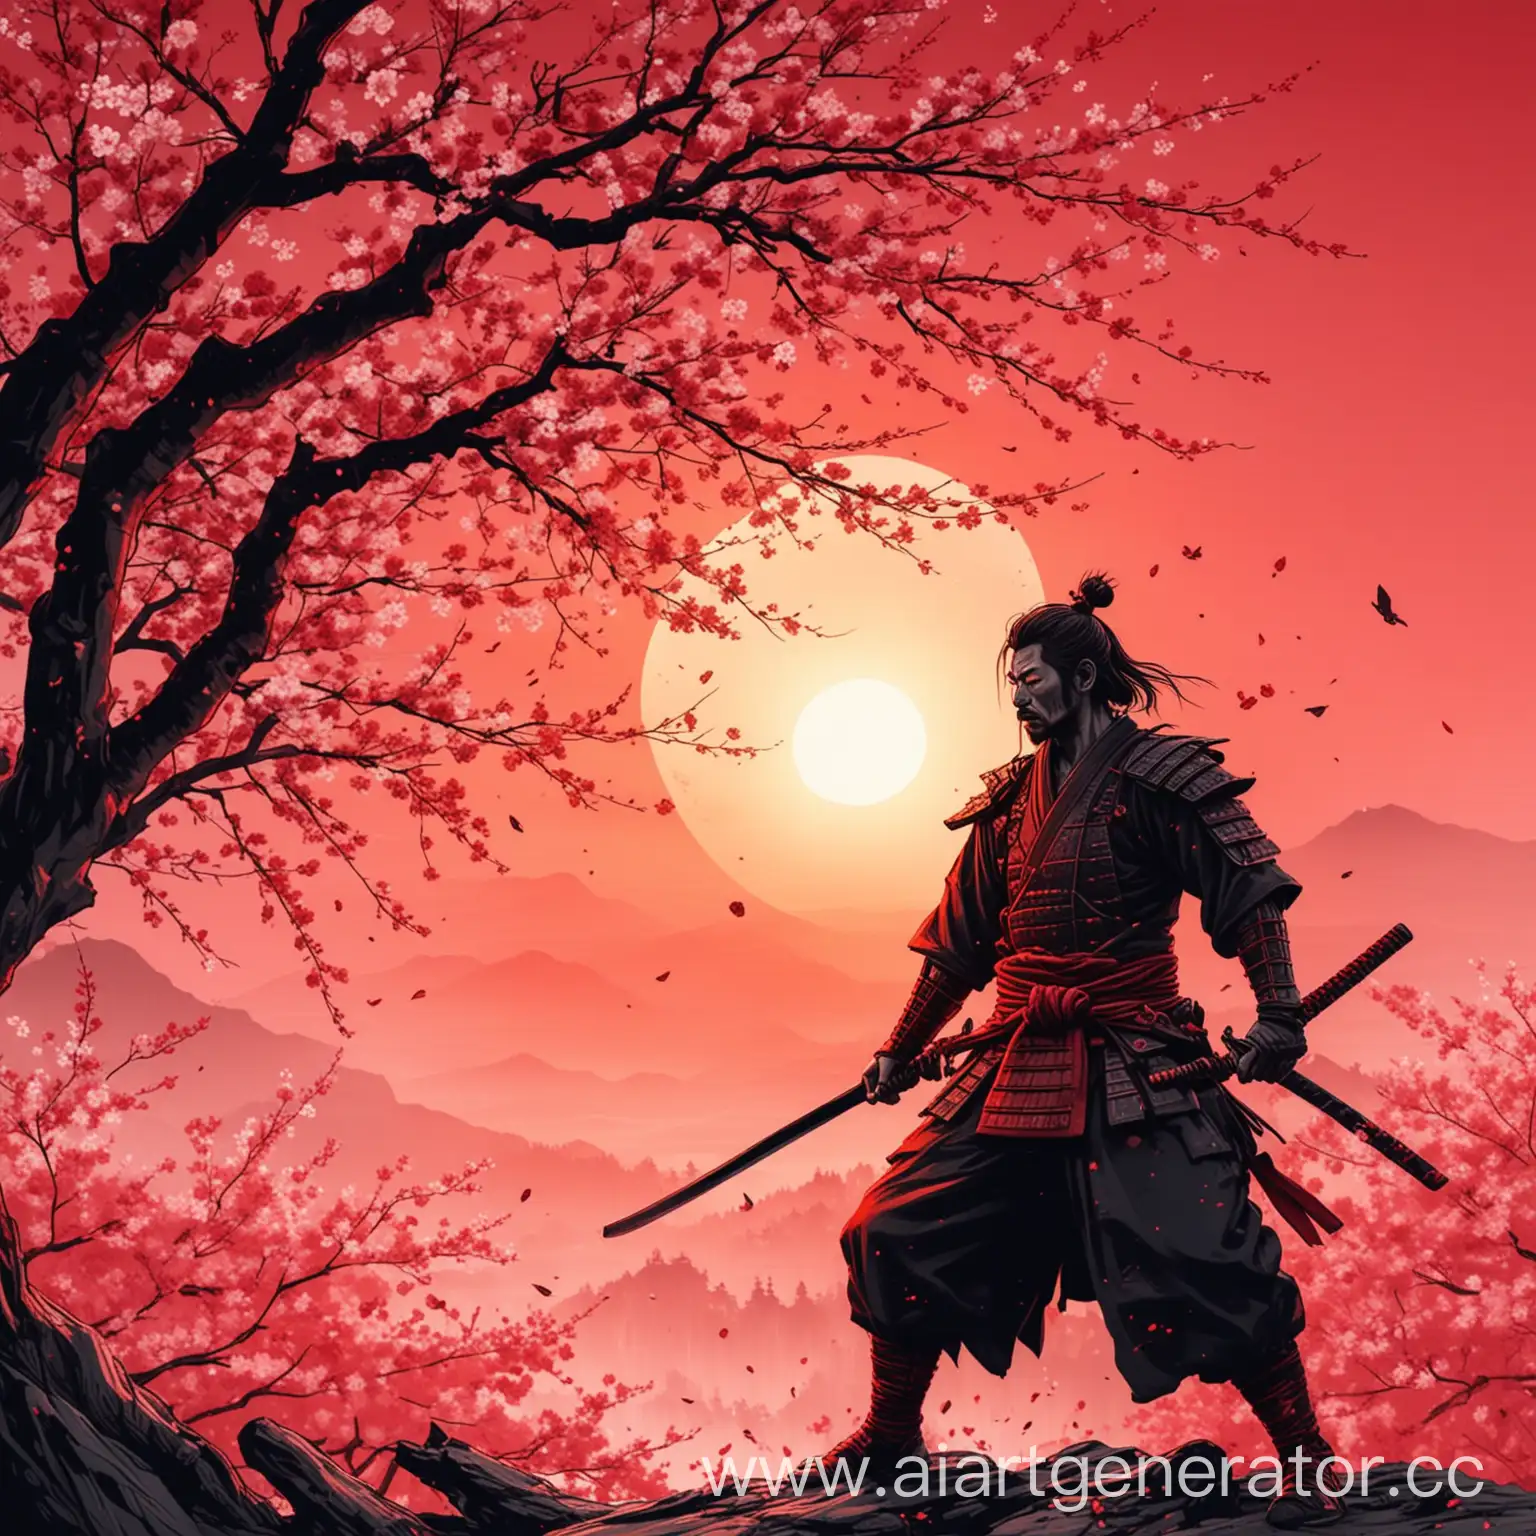 Самурай около опадающей сакуры на фоне красного рассвета в нарисованной стилистике 